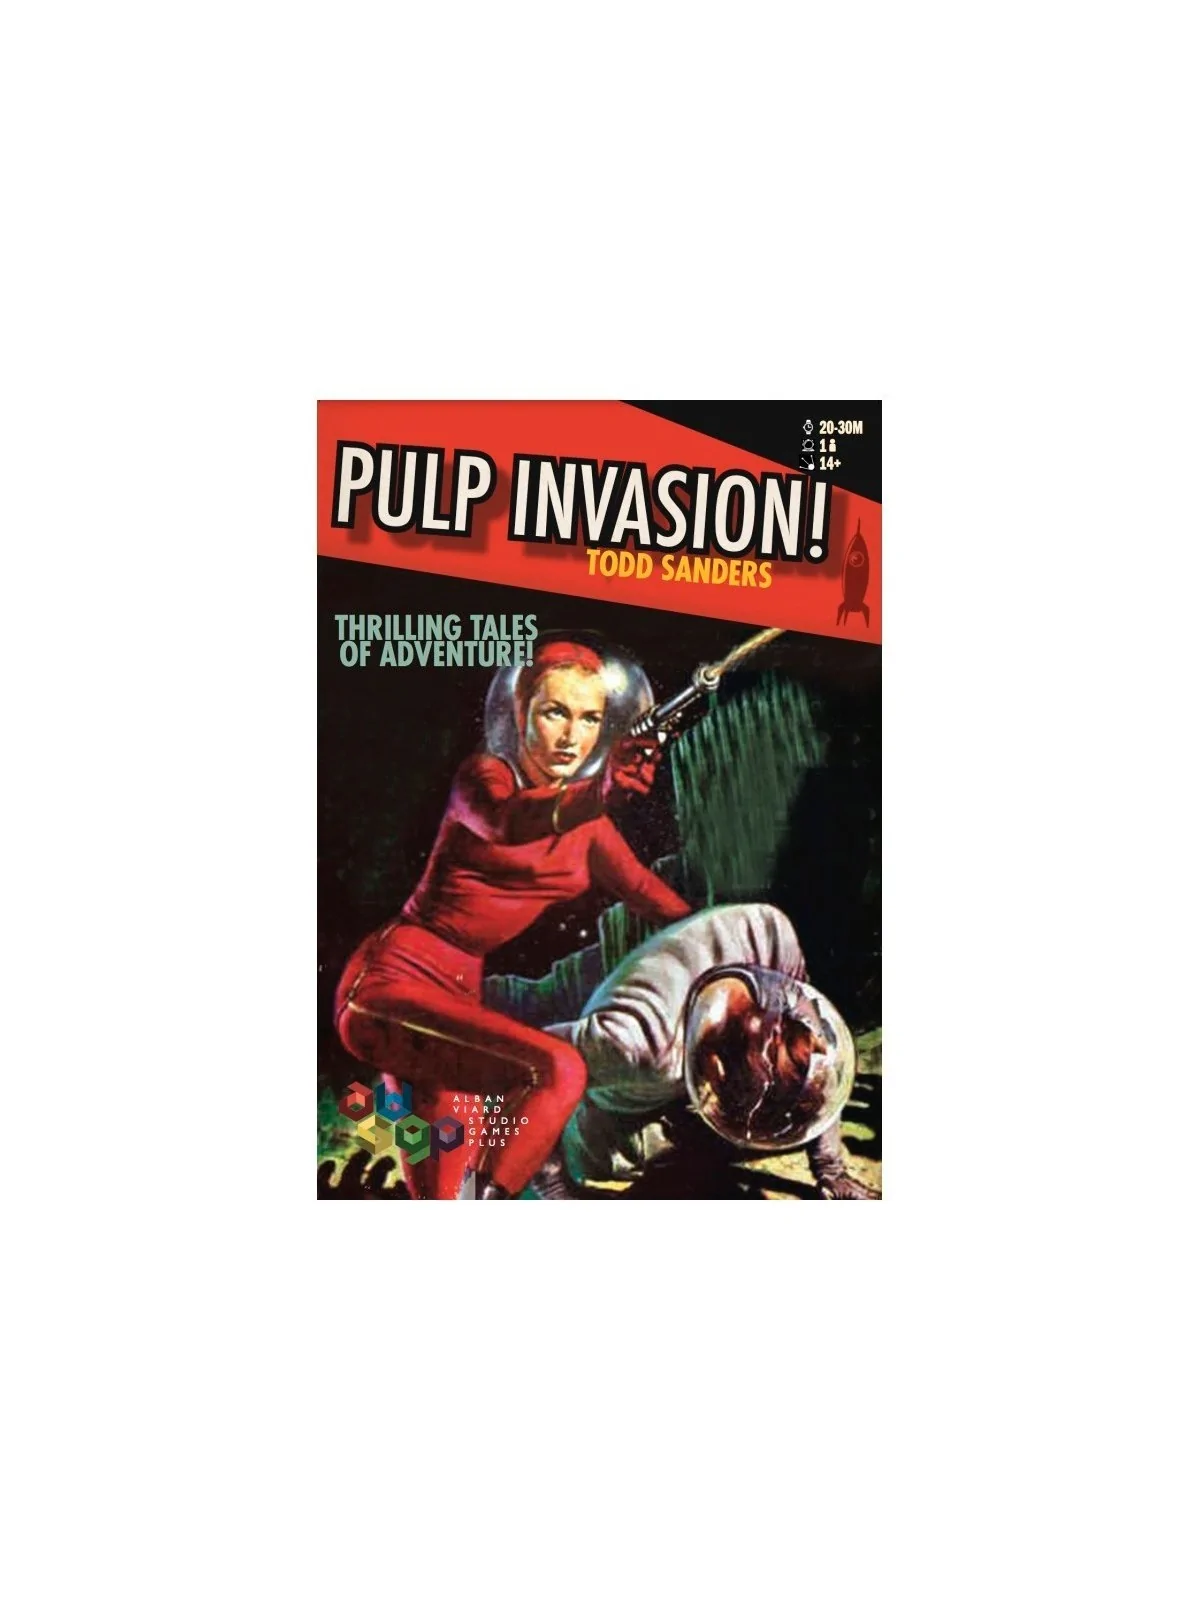 Comprar Pulp Invasion barato al mejor precio 18,00 € de Alban Viard St